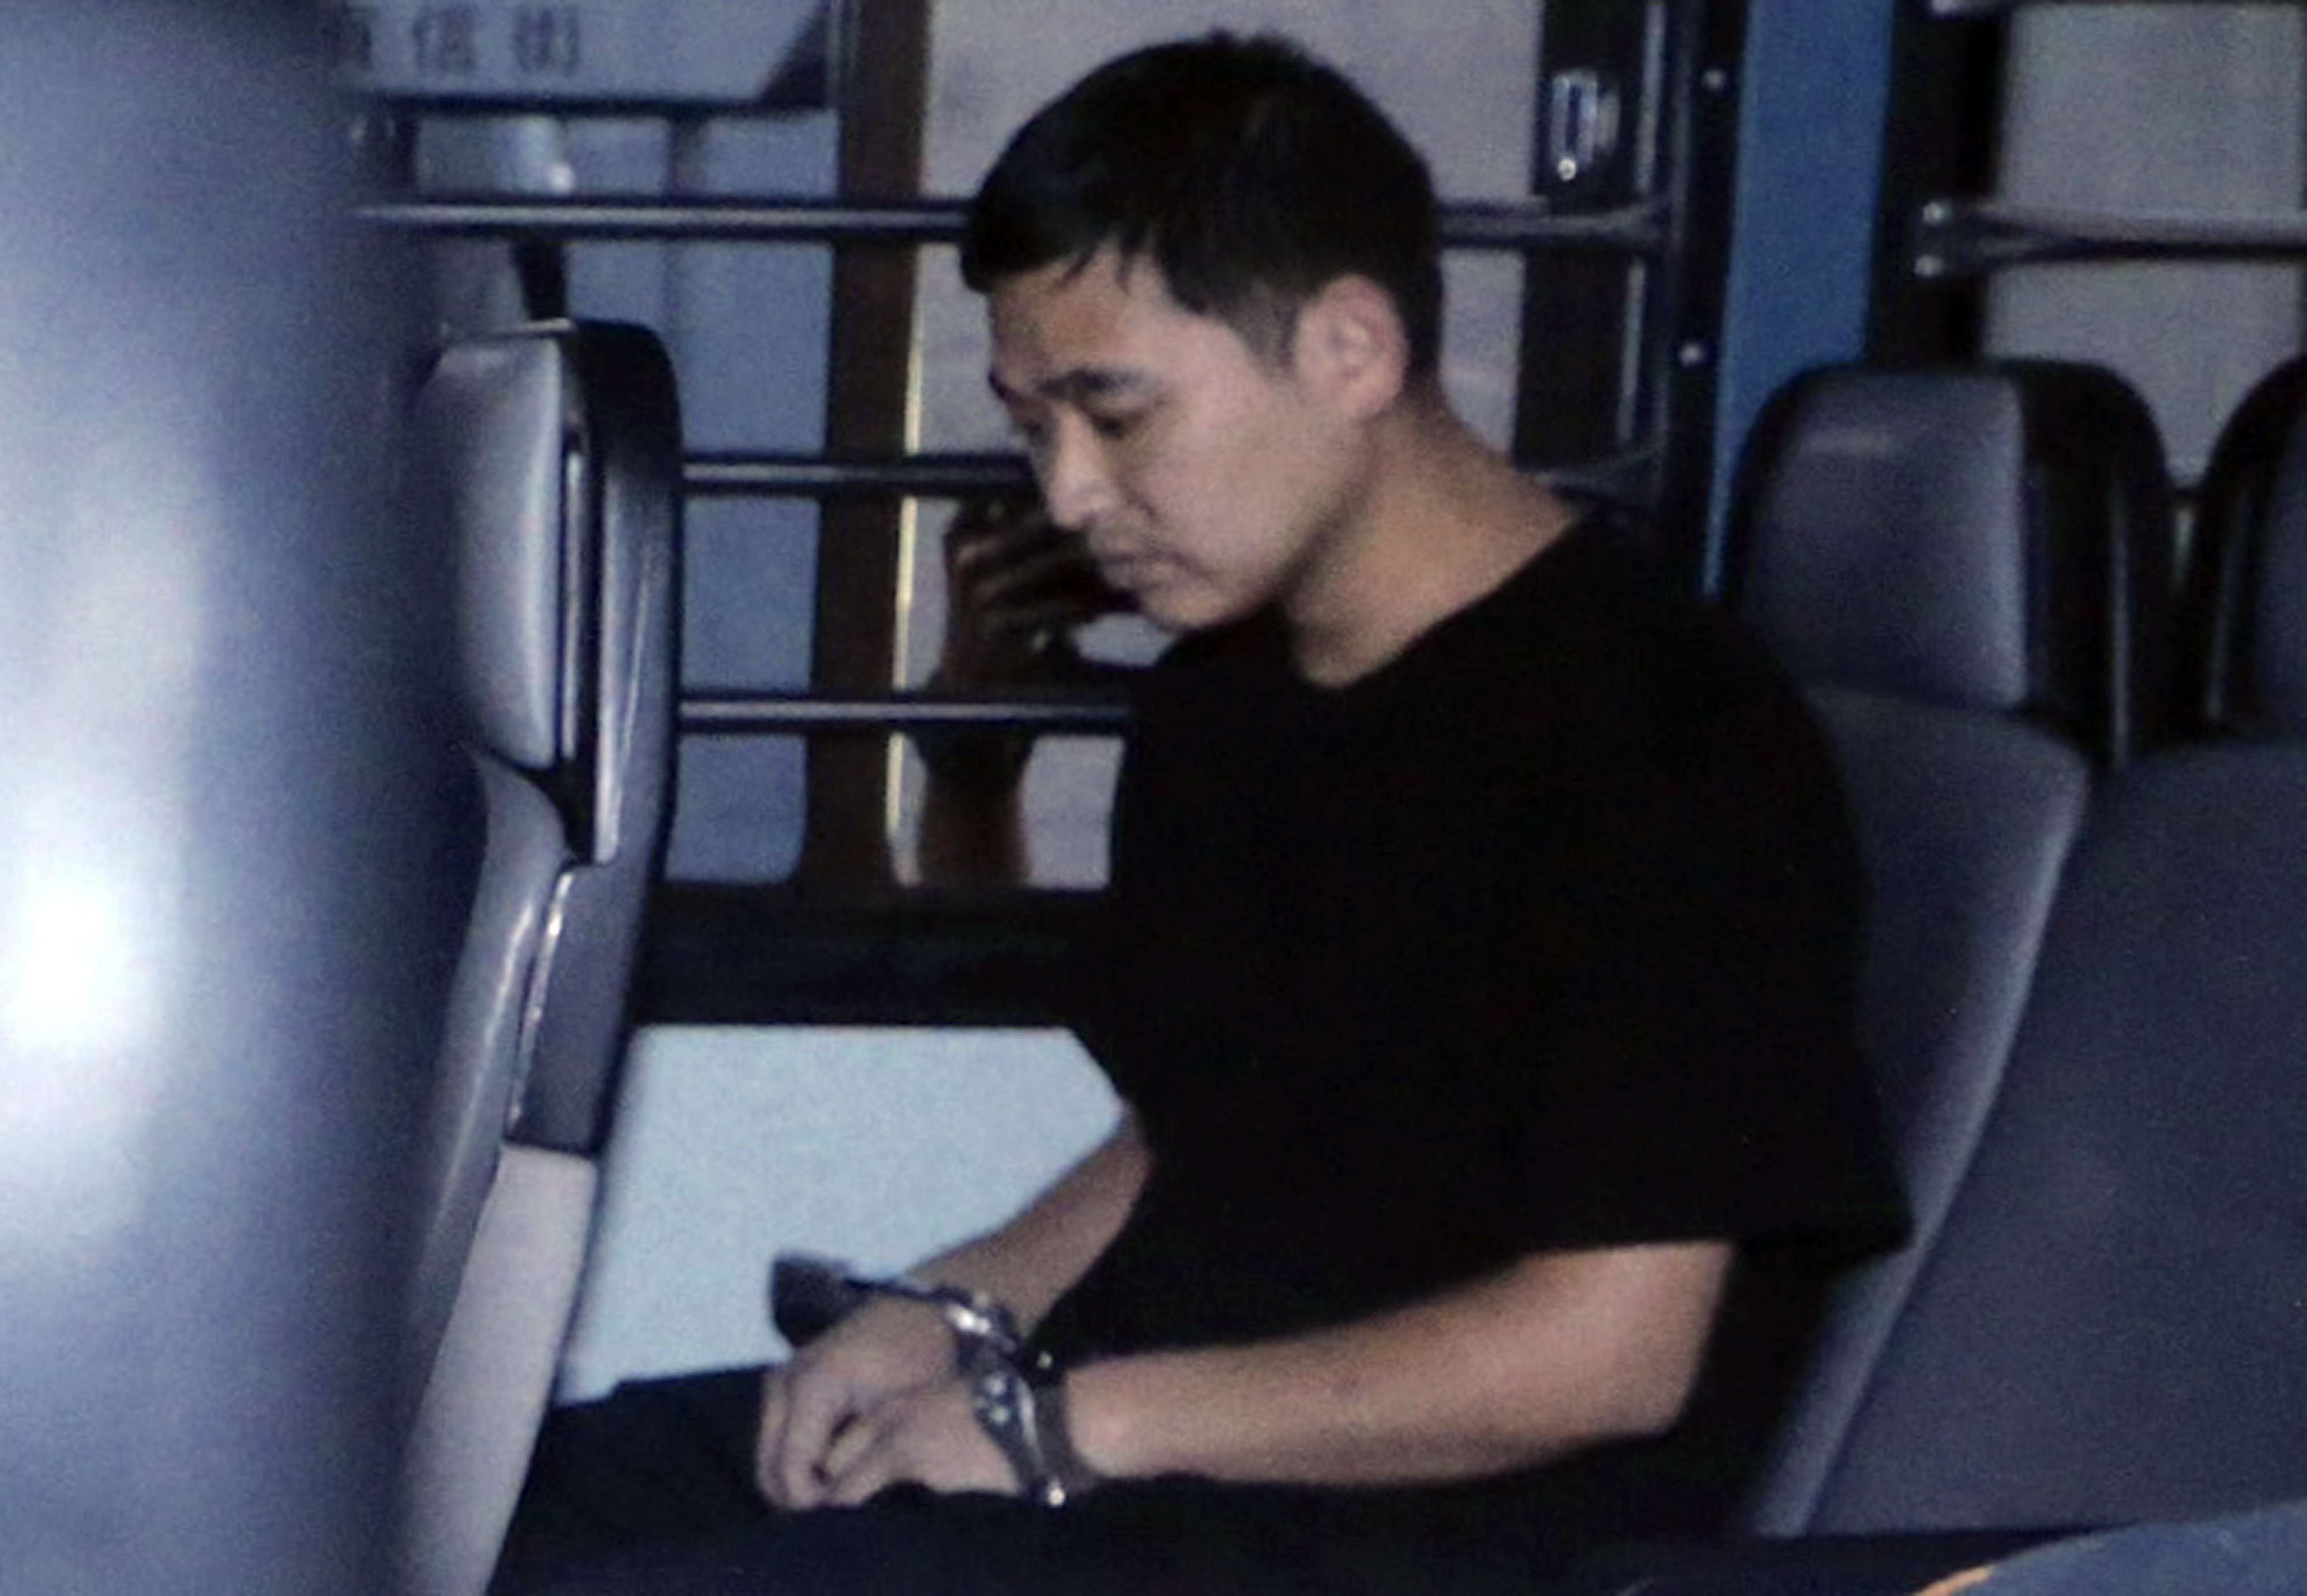 Zheng Xingwang is the only member of the kidnap gang facing justice in Hong Kong. Photo: David Wong